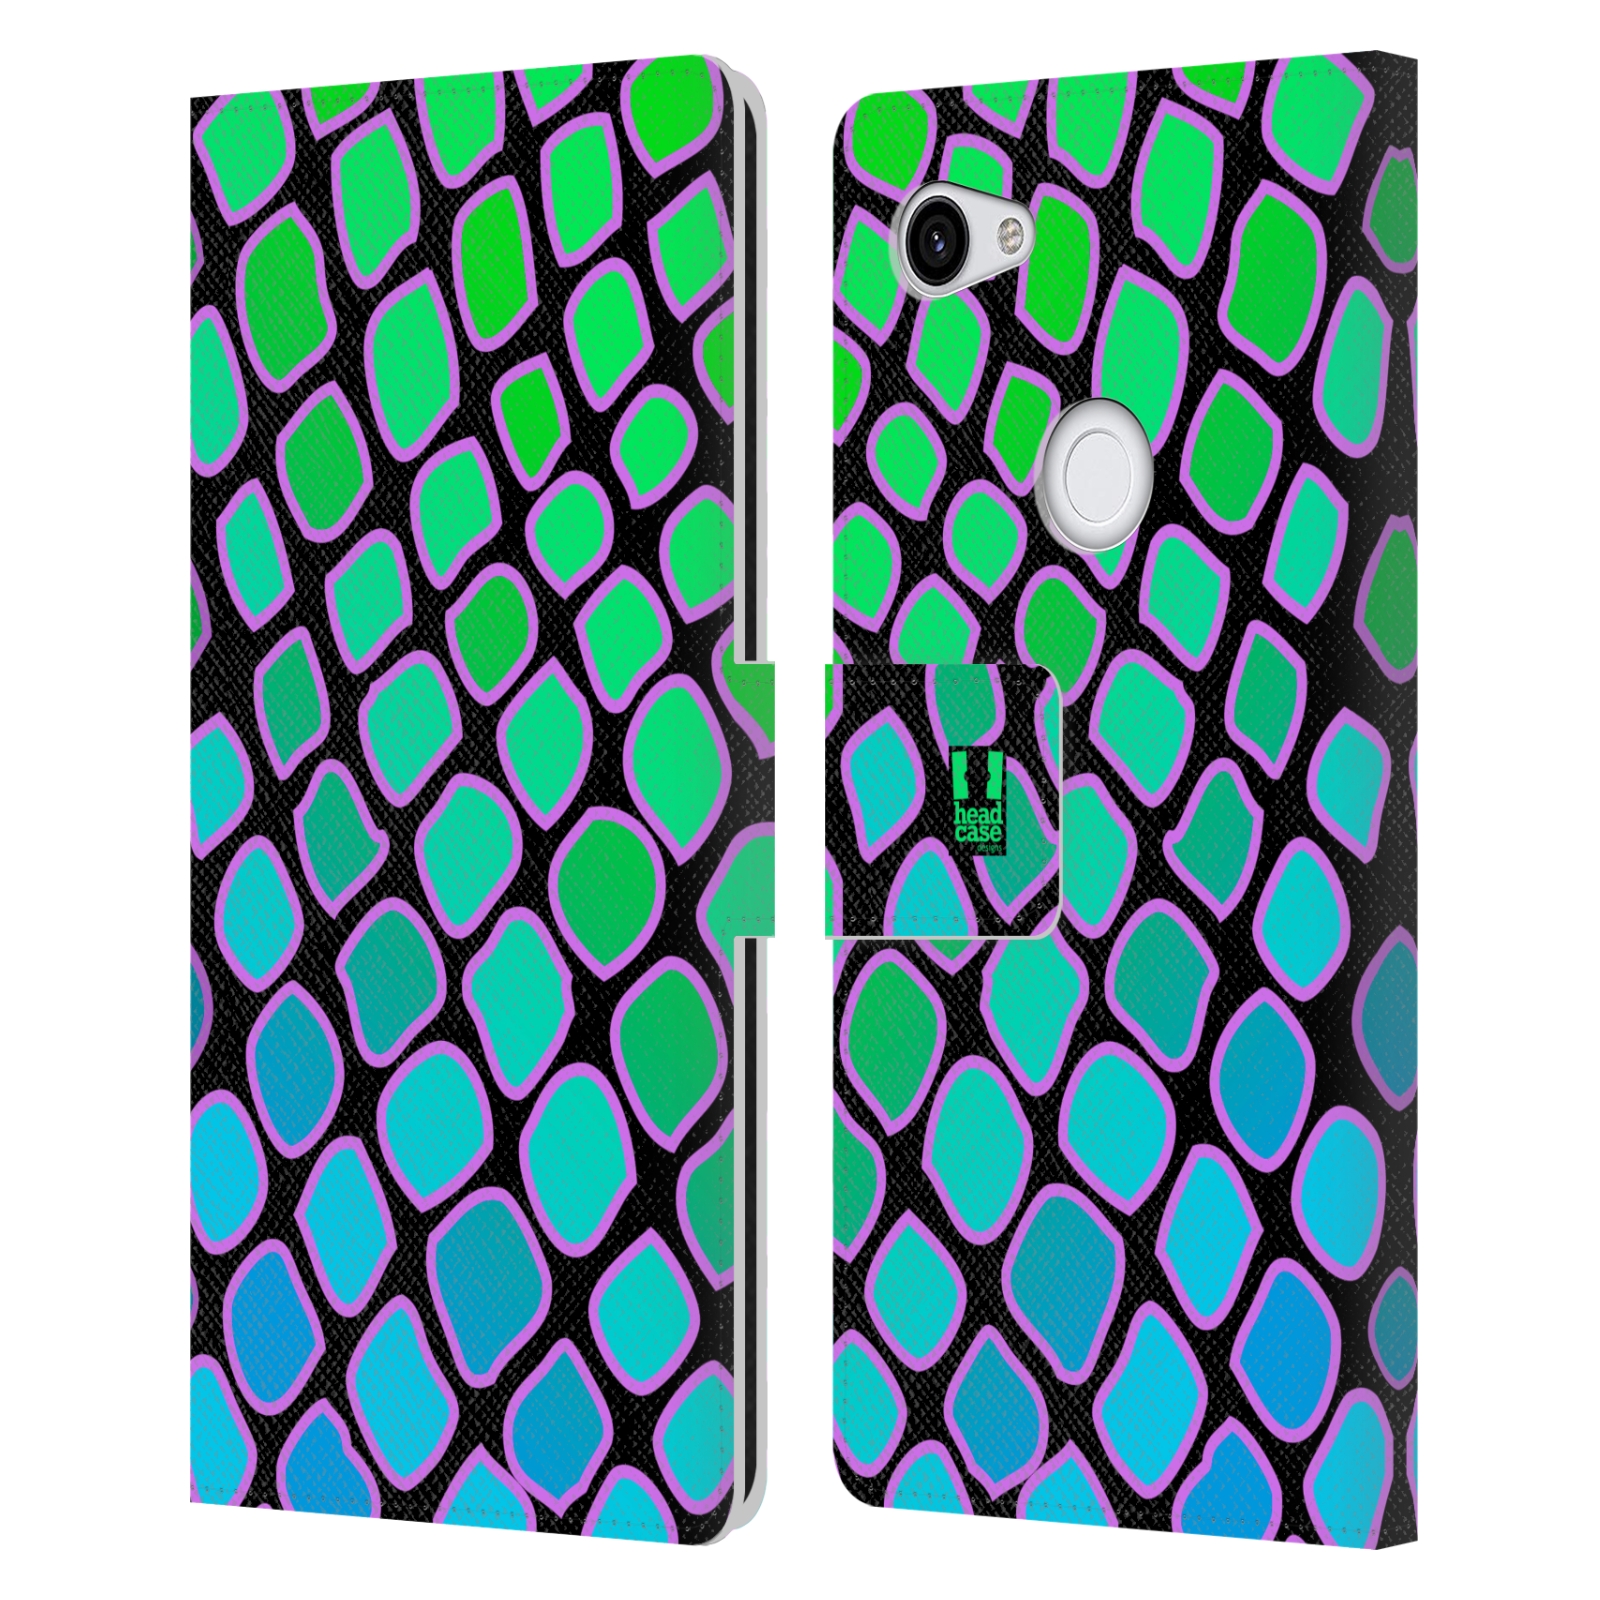 Pouzdro na mobil Google Pixel 3a XL Zvířecí barevné vzory vodní had modrá a zelená barva AQUA